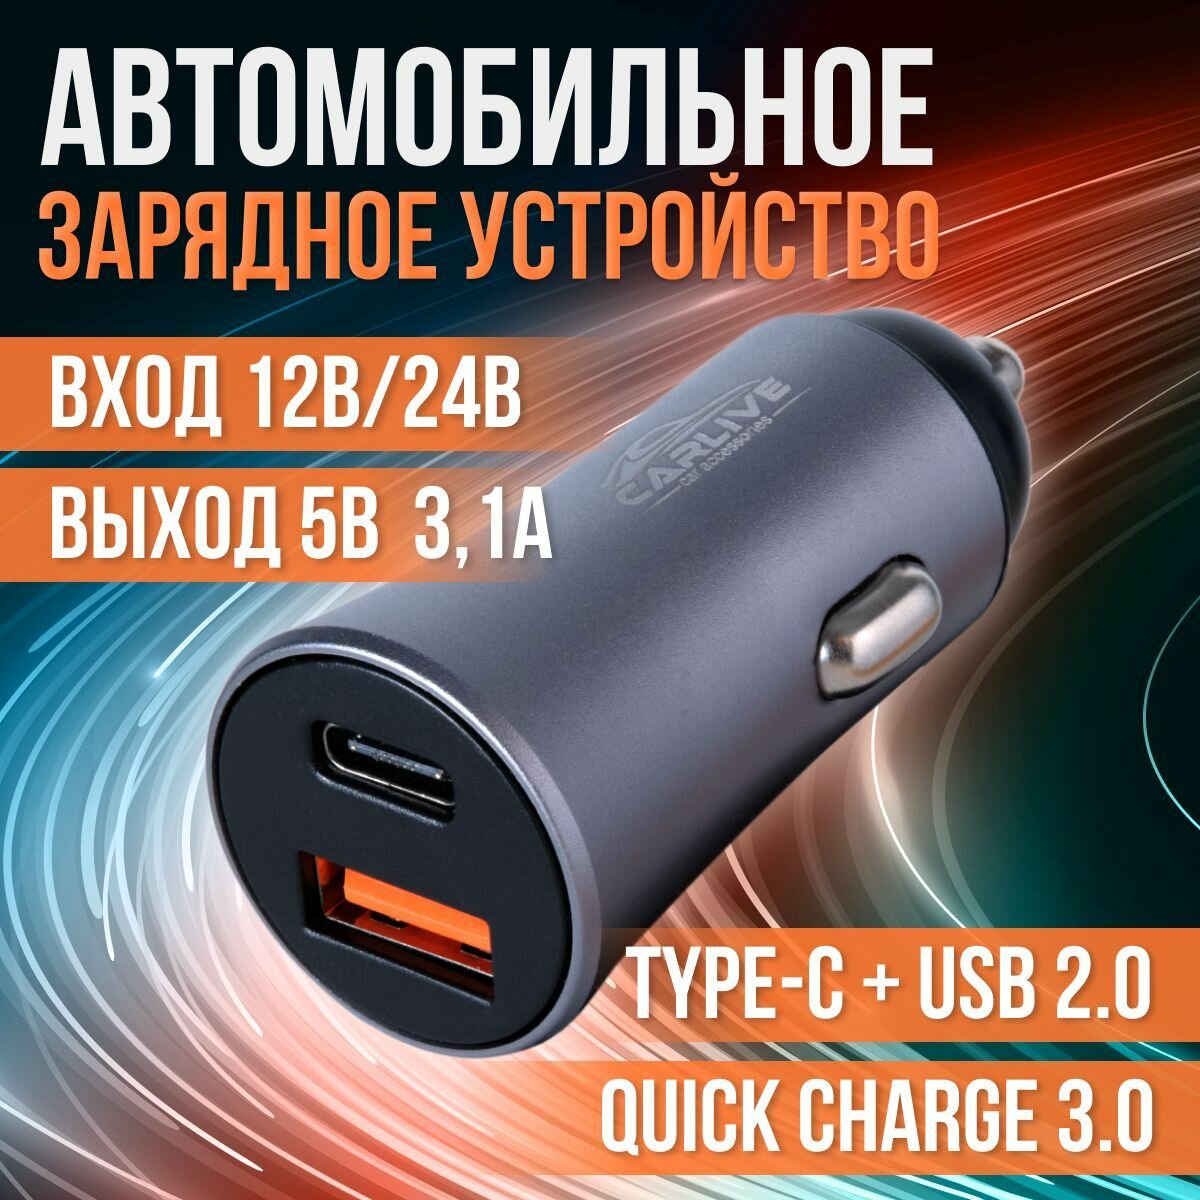 Автомобильное зарядное устройство USB и Type-C для телефона в прикуриватель Быстрая зарядка в авто